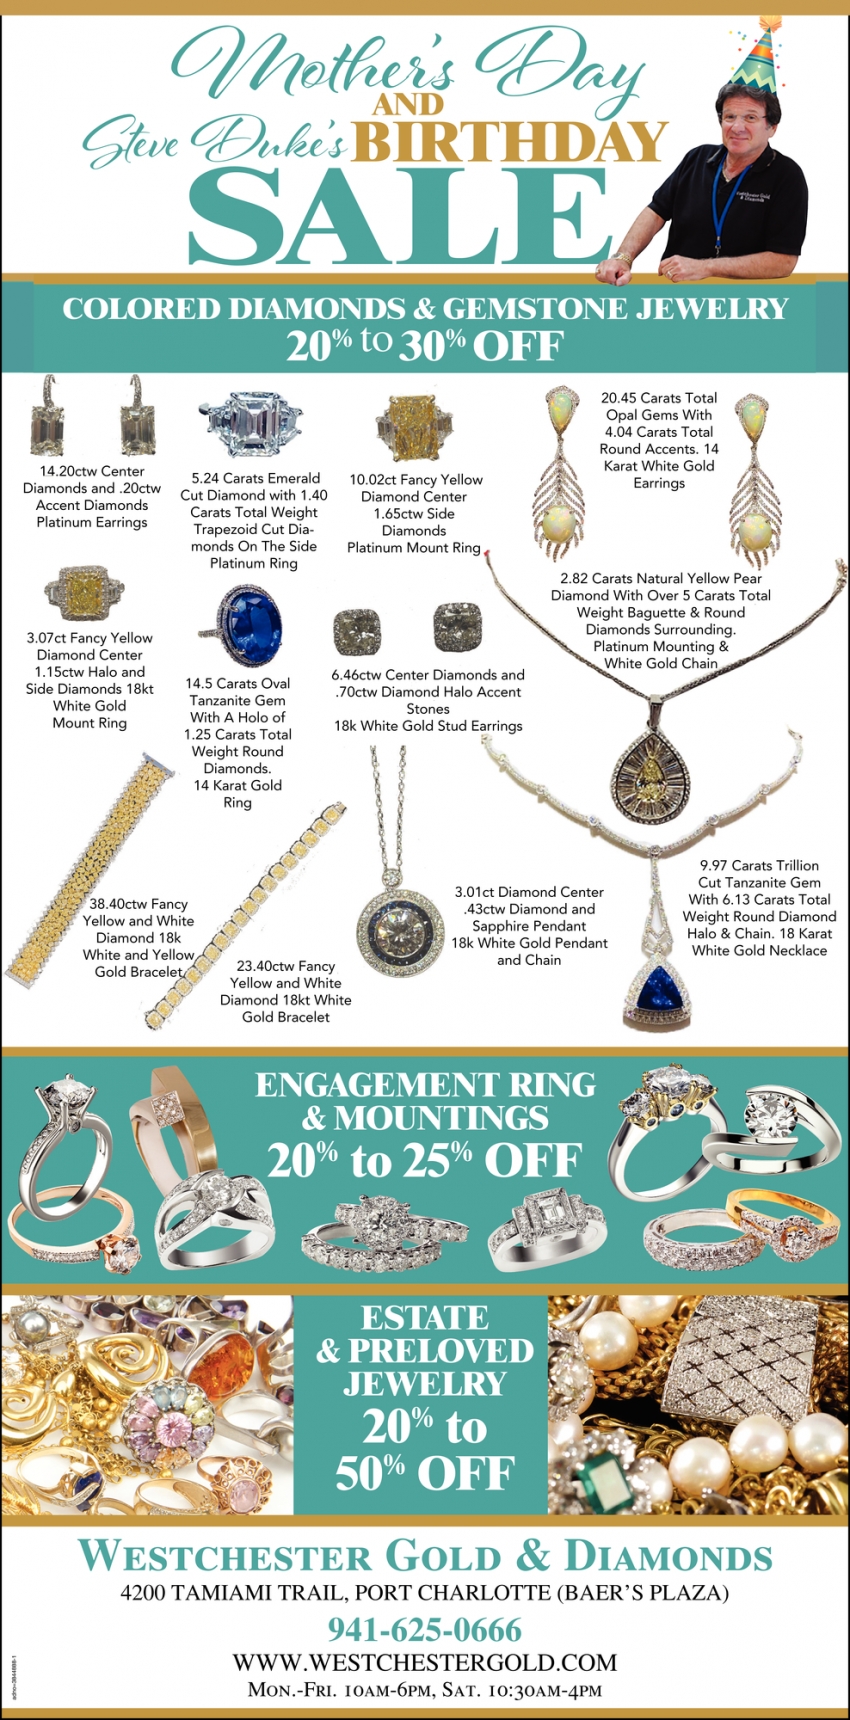 Colored Diamonds & Gemstone Jewelry